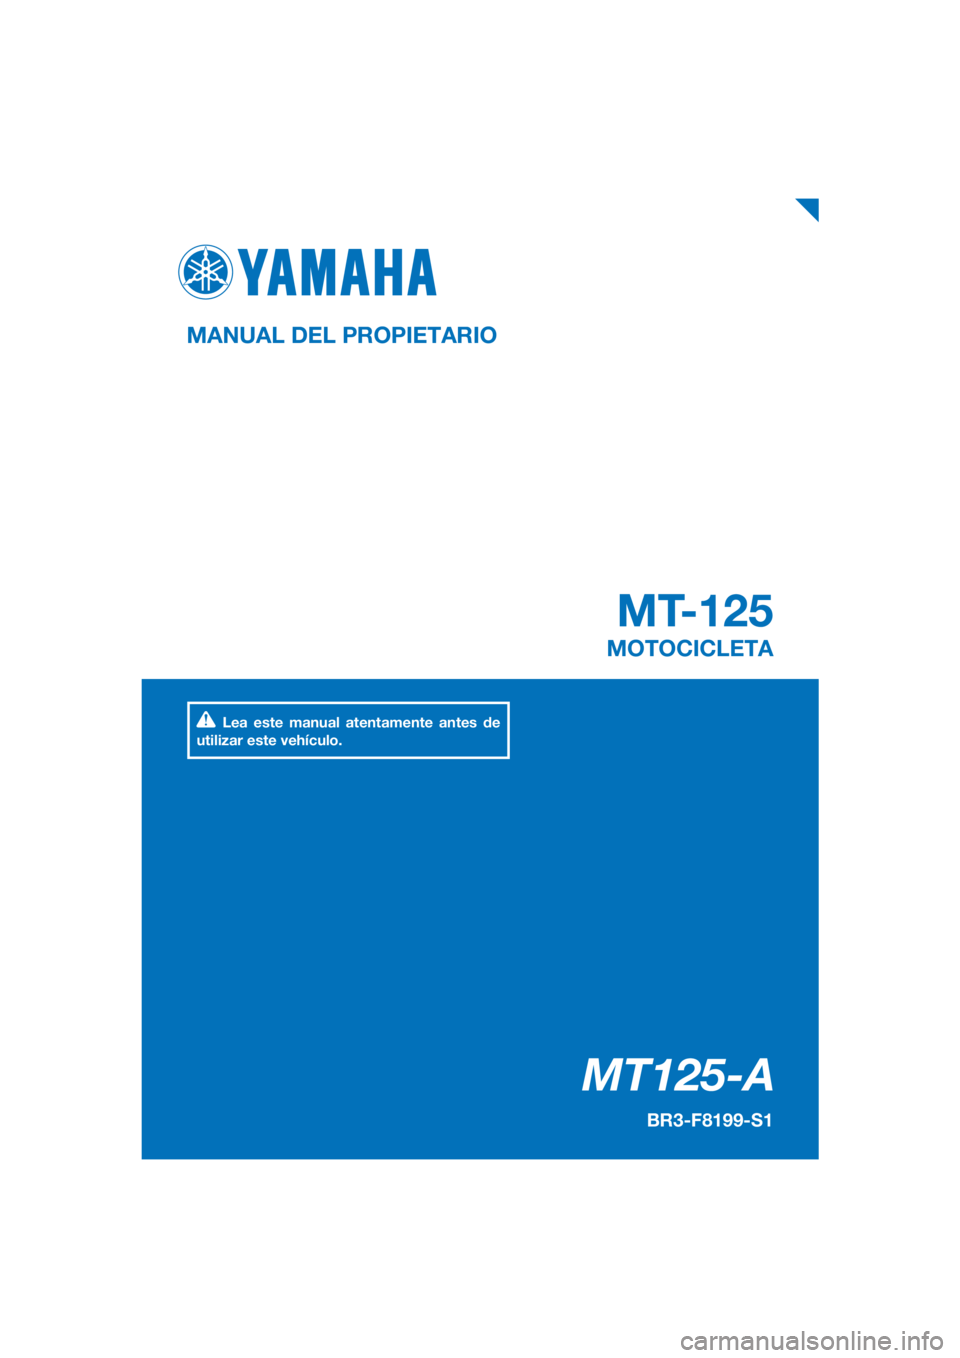 YAMAHA MT-125 2018  Manuale de Empleo (in Spanish) PANTONE285C
MT125-A
MT-125
MANUAL DEL PROPIETARIO
BR3-F8199-S1
MOTOCICLETA
Lea este manual atentamente antes de 
utilizar este vehículo.
[Spanish  (S)] 